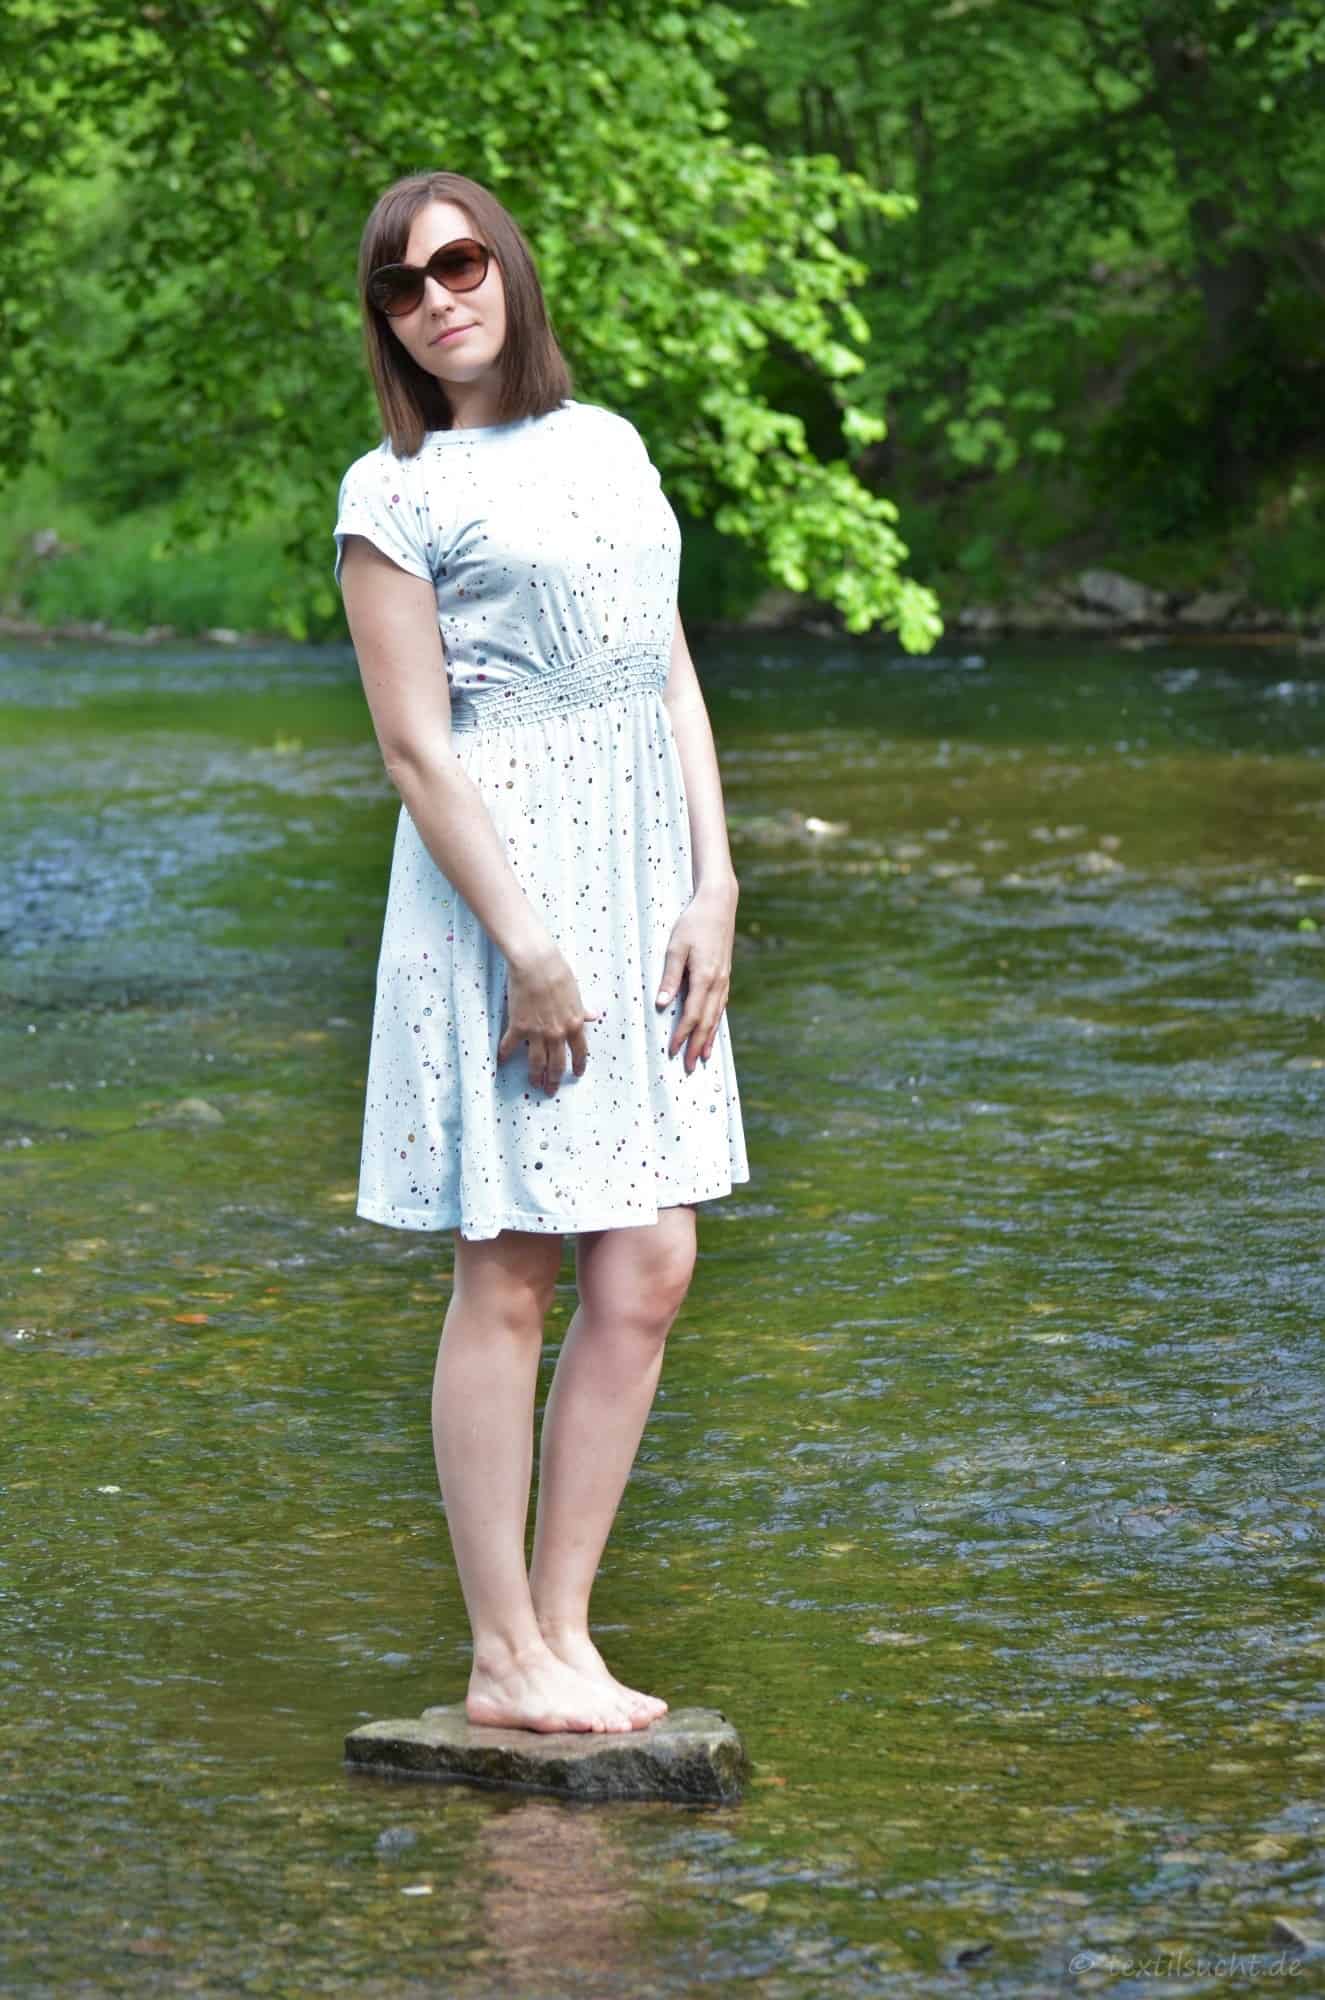 Schnittmuster Kleid: Federleicht Basisschnitt Sommerkleid - Bild 2